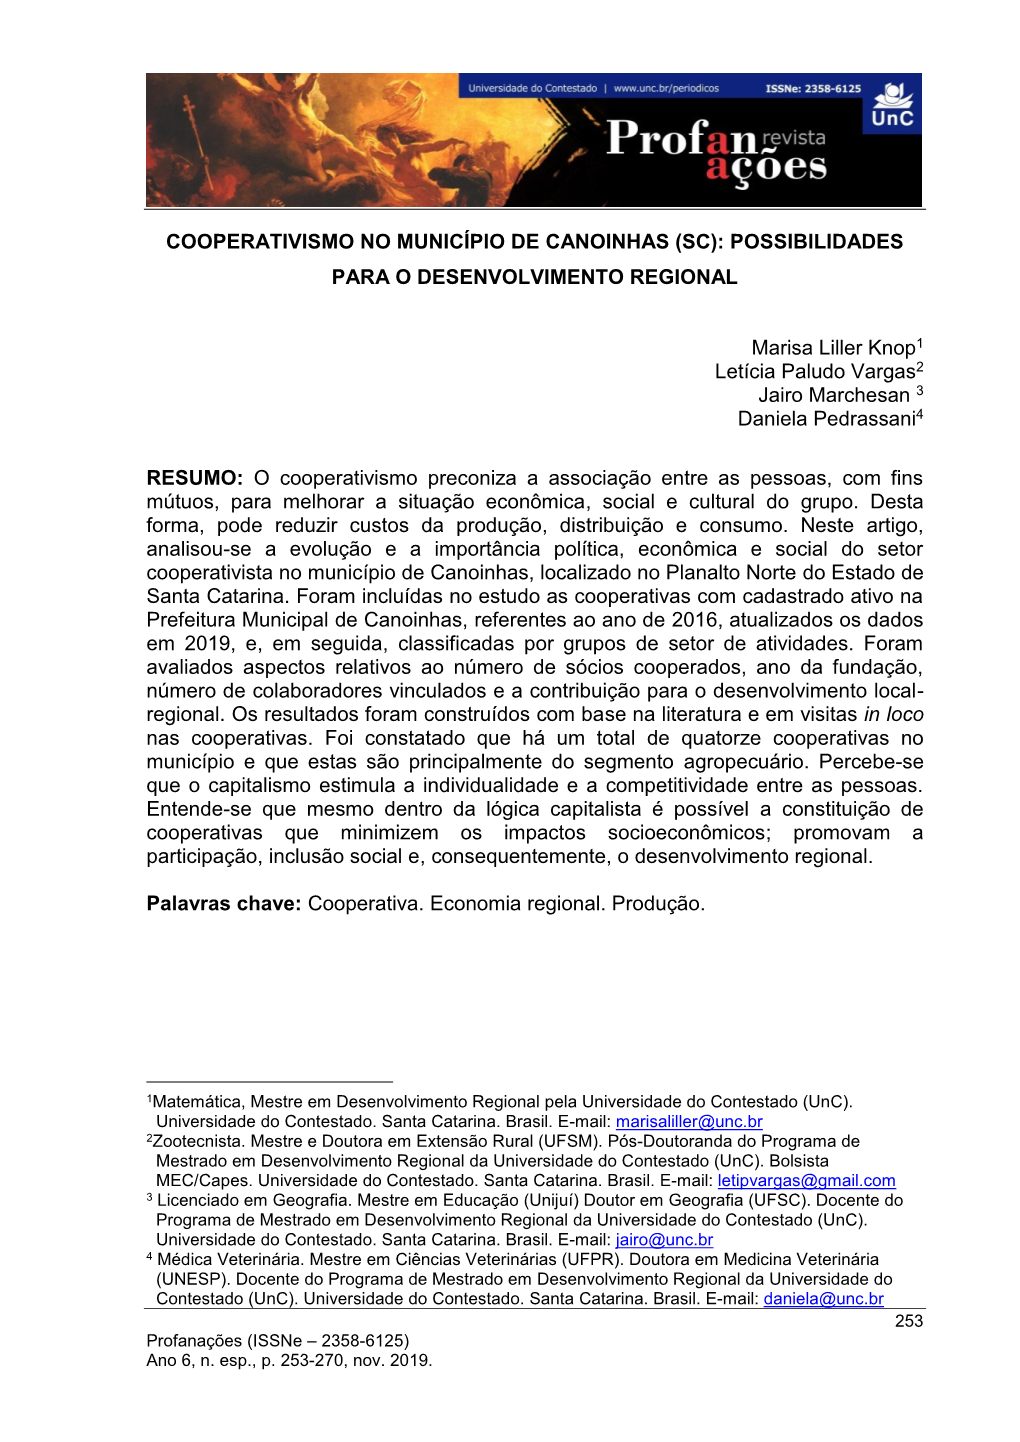 Cooperativismo No Município De Canoinhas (Sc): Possibilidades Para O Desenvolvimento Regional